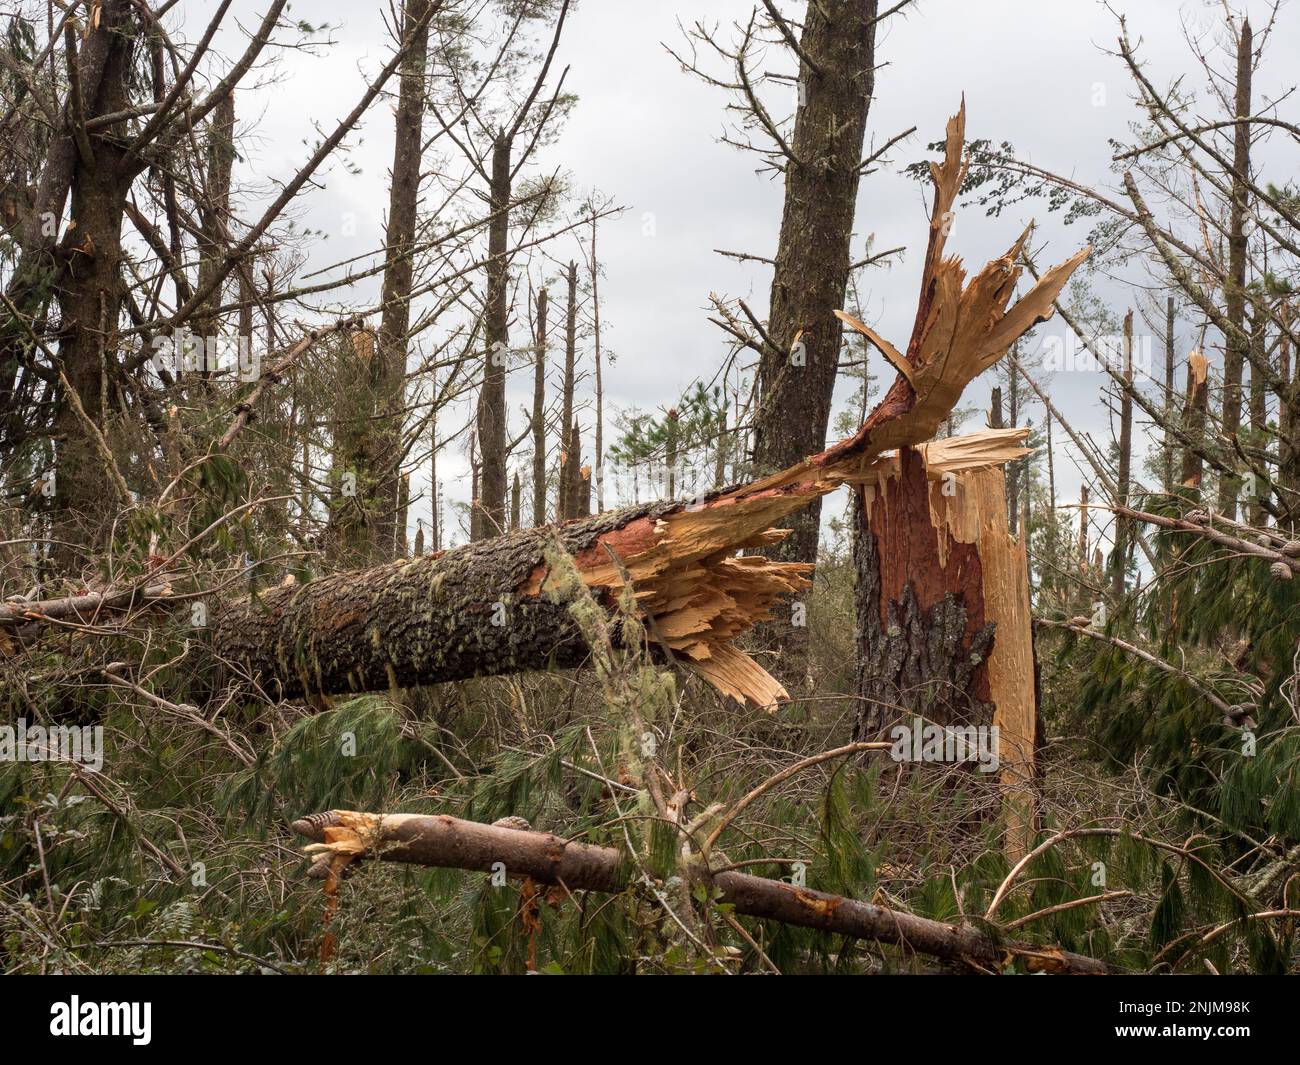 Vue rapprochée d'un tronc de pin cassé dans une plantation forestière après la tempête cyclone Gabrielle.presque tous les arbres ont été brisés par de graves vents forts Banque D'Images